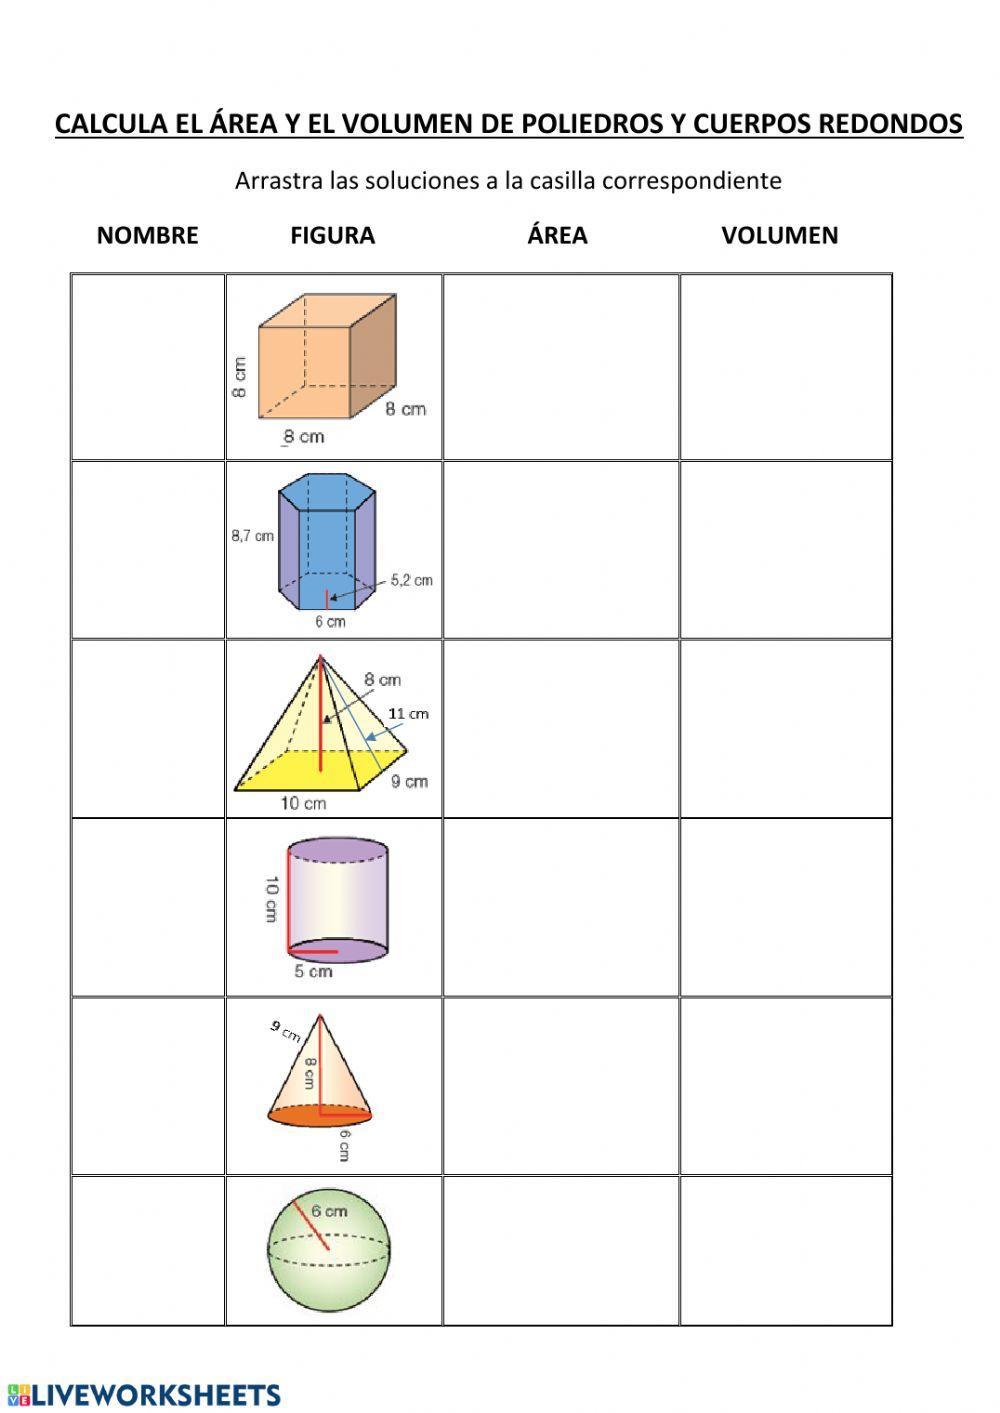 Cálculo áreas y volúmenes poliedros y cuerpos redondos